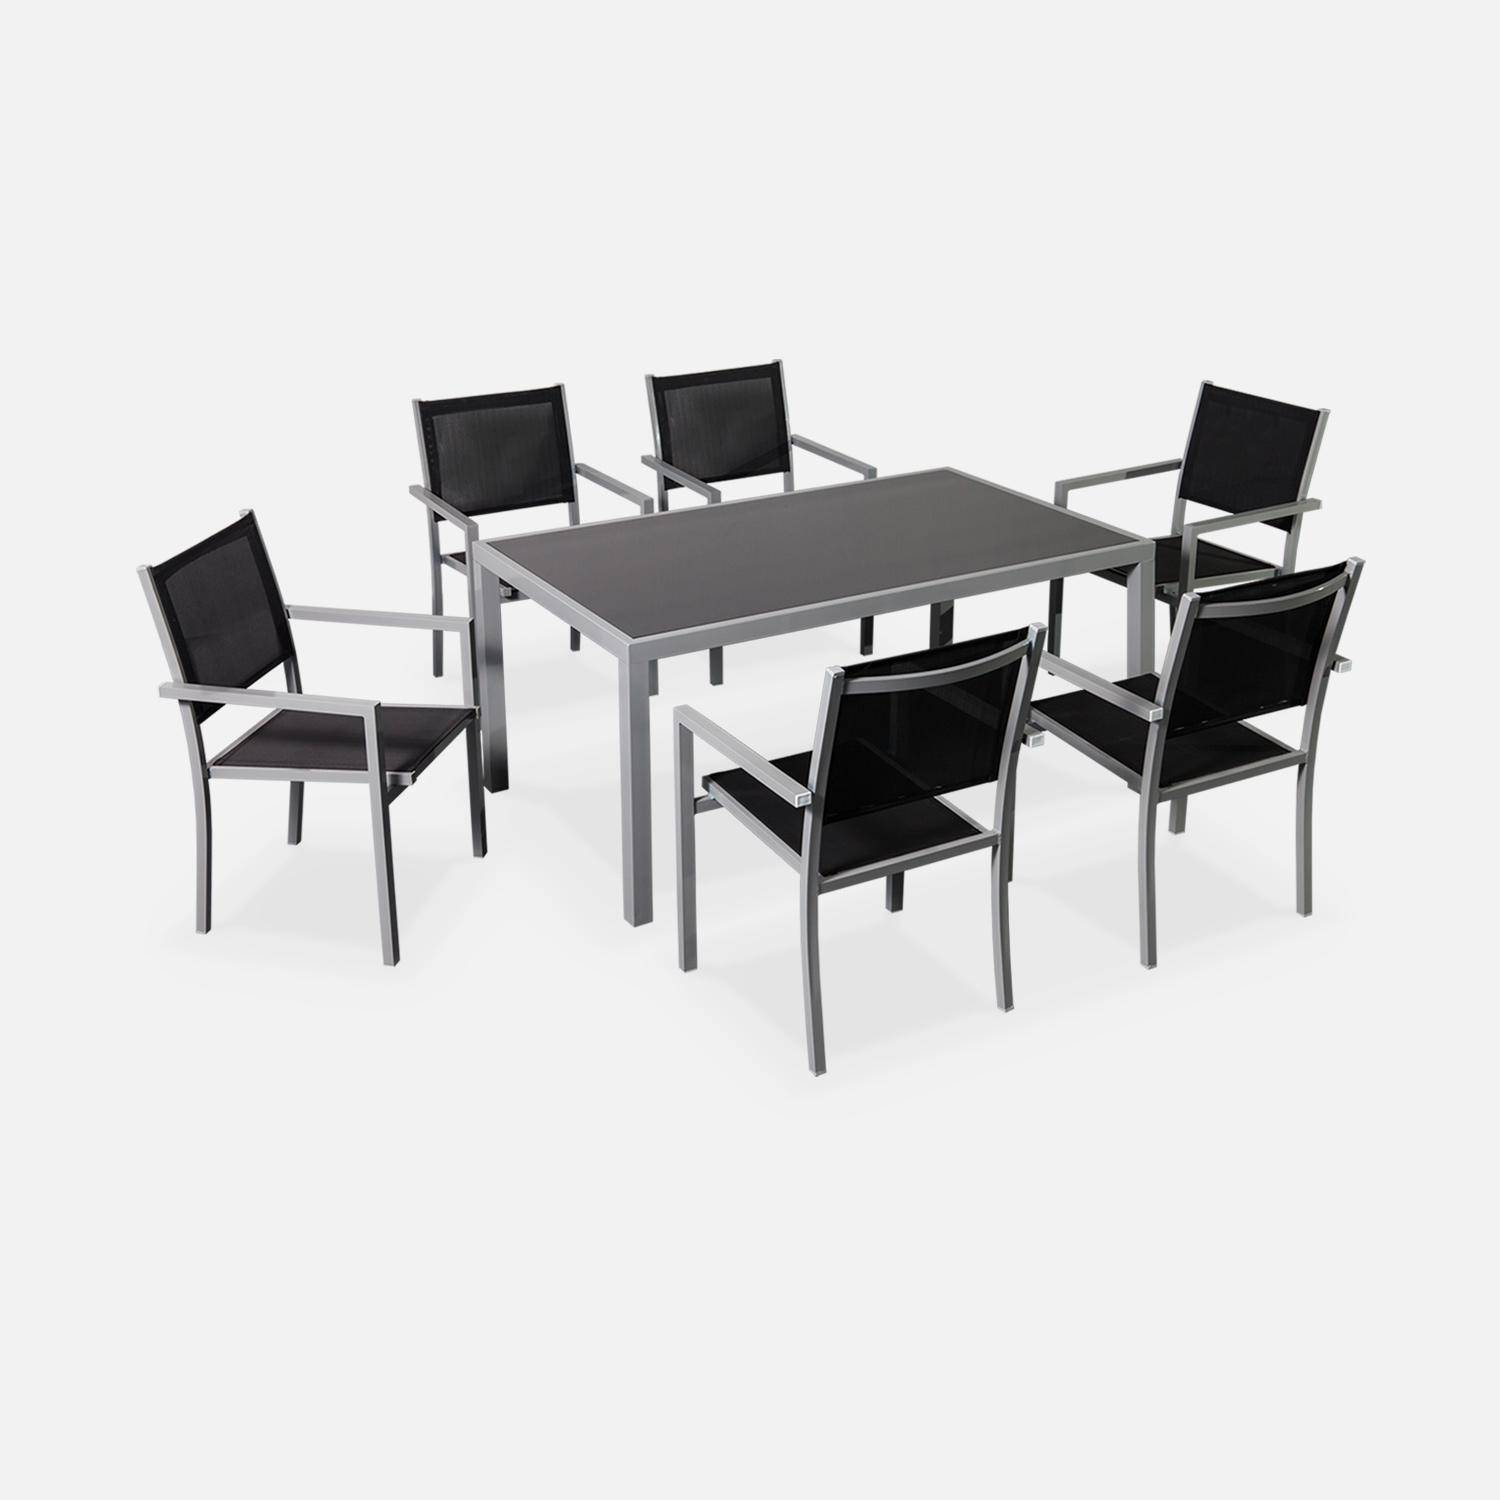 Salon de jardin en aluminium et textilène - Capua - Gris, noir - 6 places - 1 grande table rectangulaire, 6 fauteuils empilables Photo2